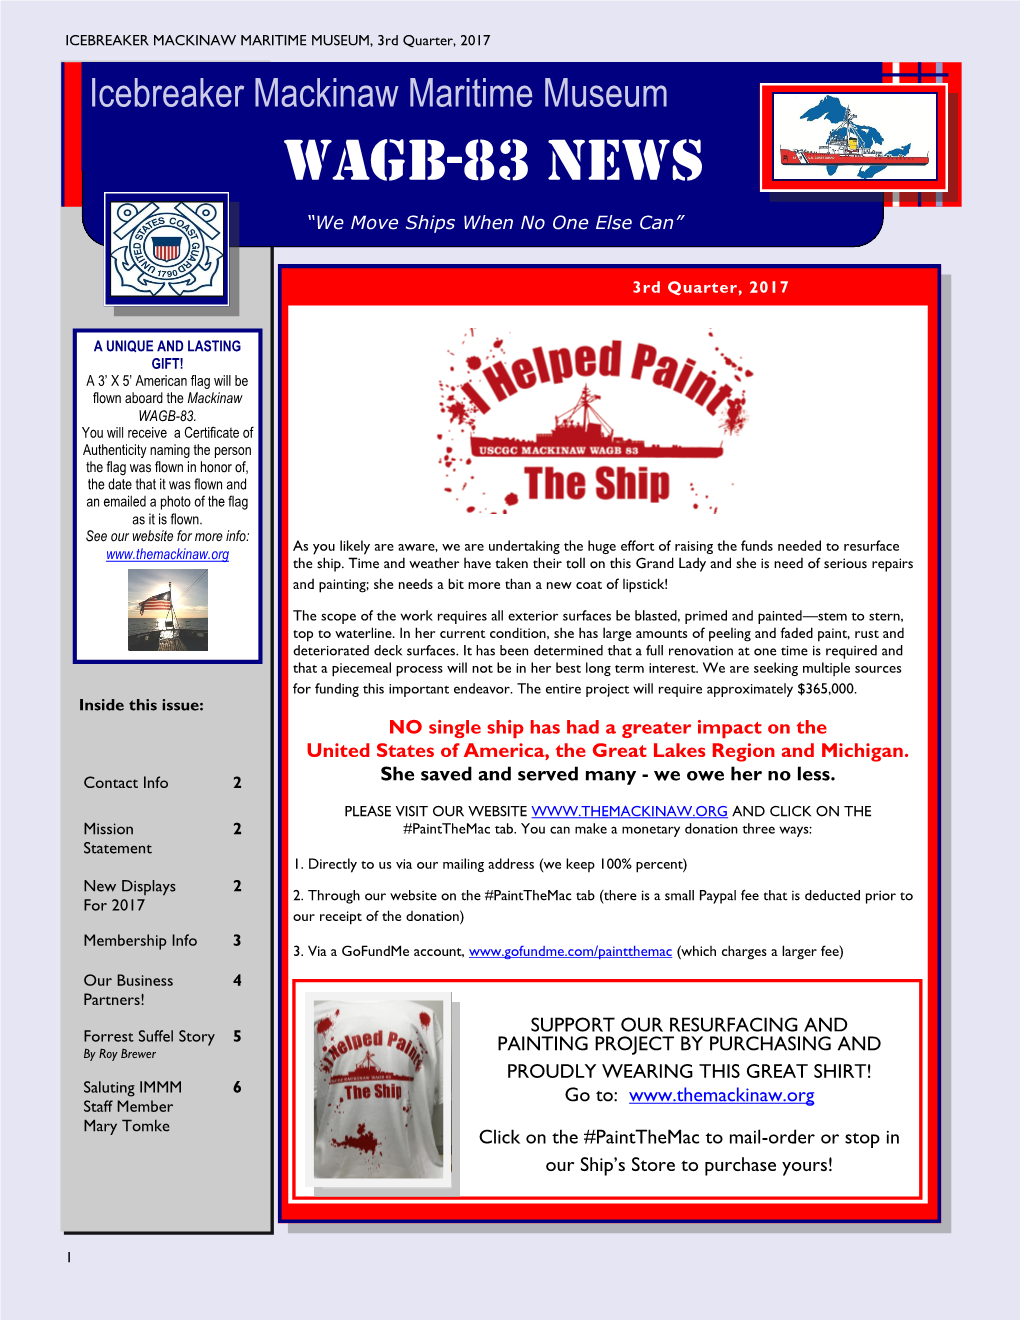 WAGB-83 News